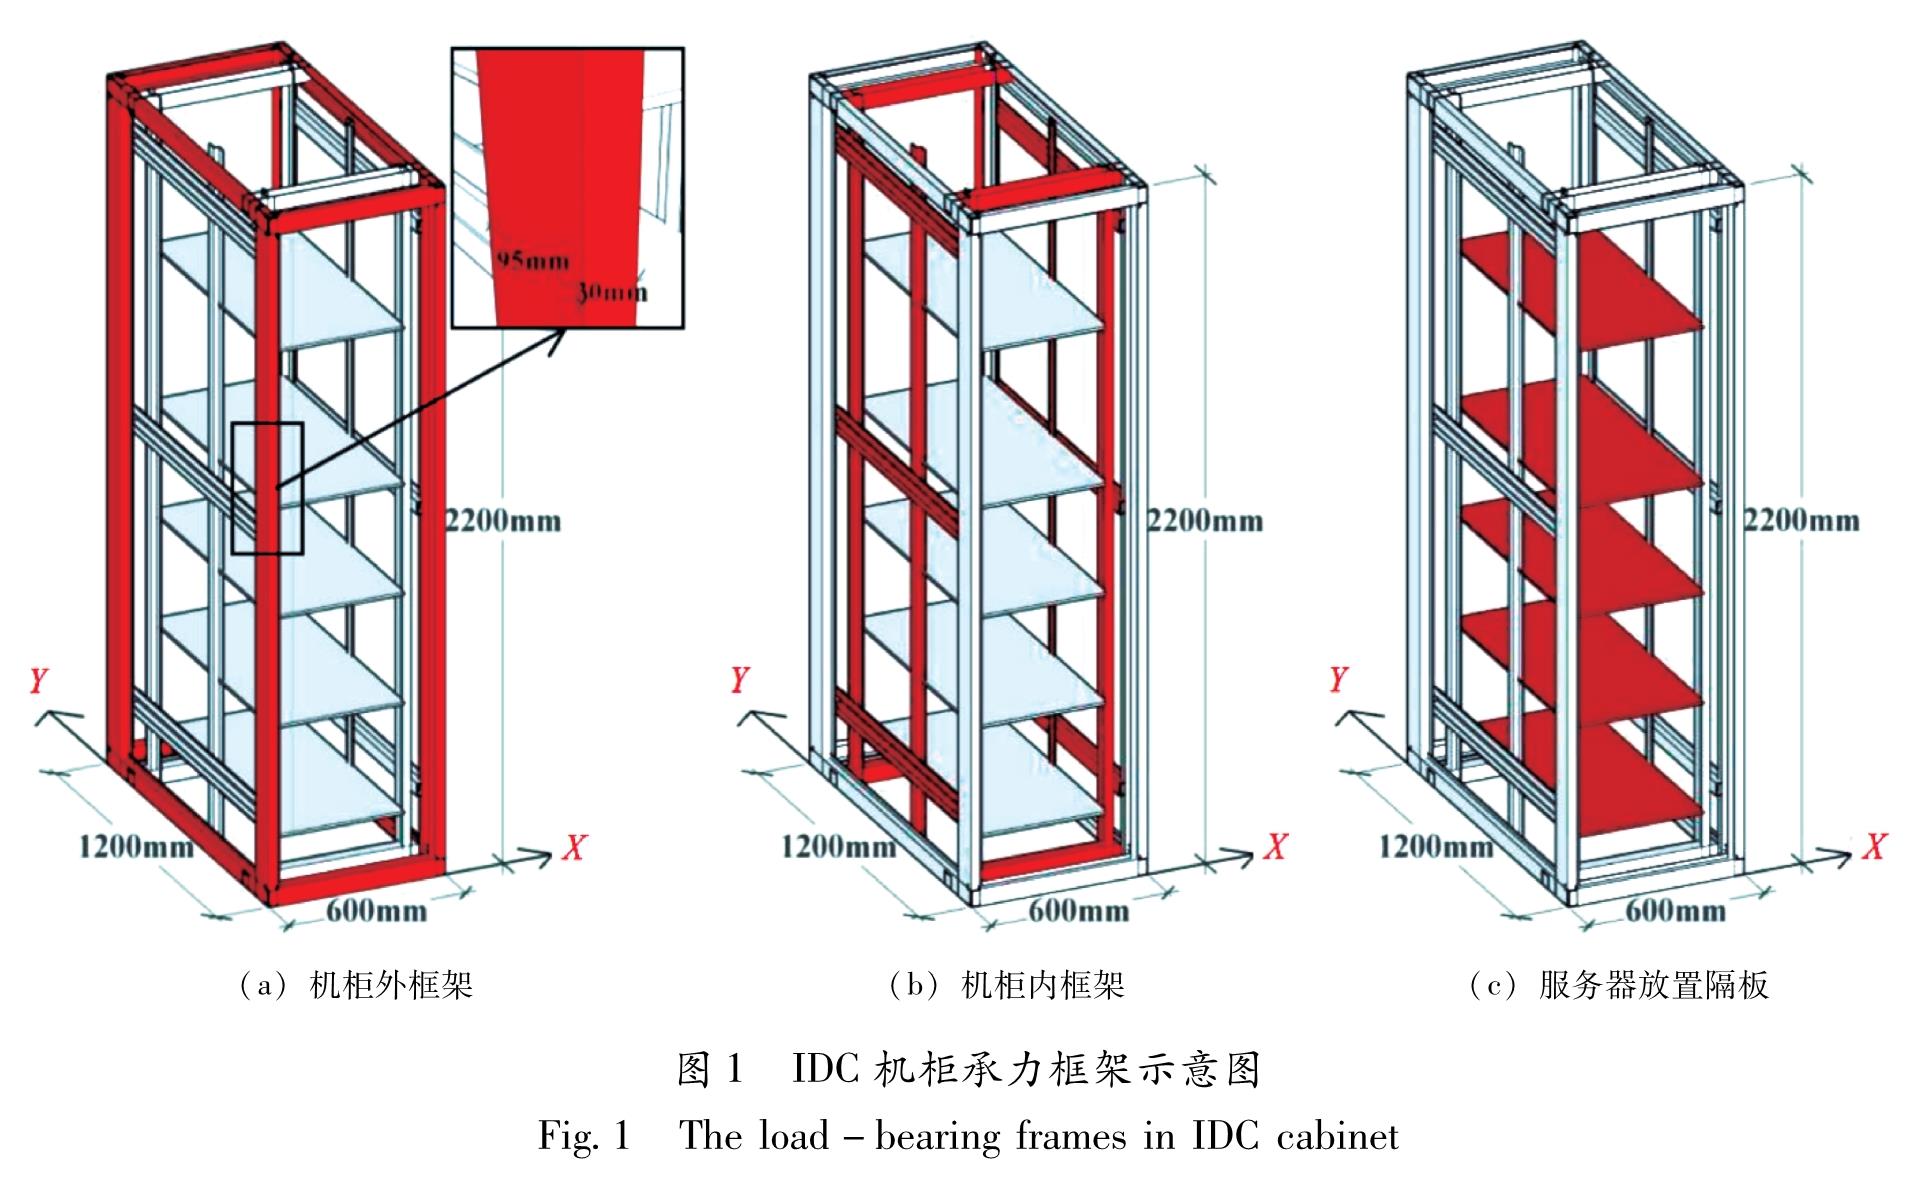 图1 IDC机柜承力框架示意图<br/>Fig.1 The load-bearing frames in IDC cabinet